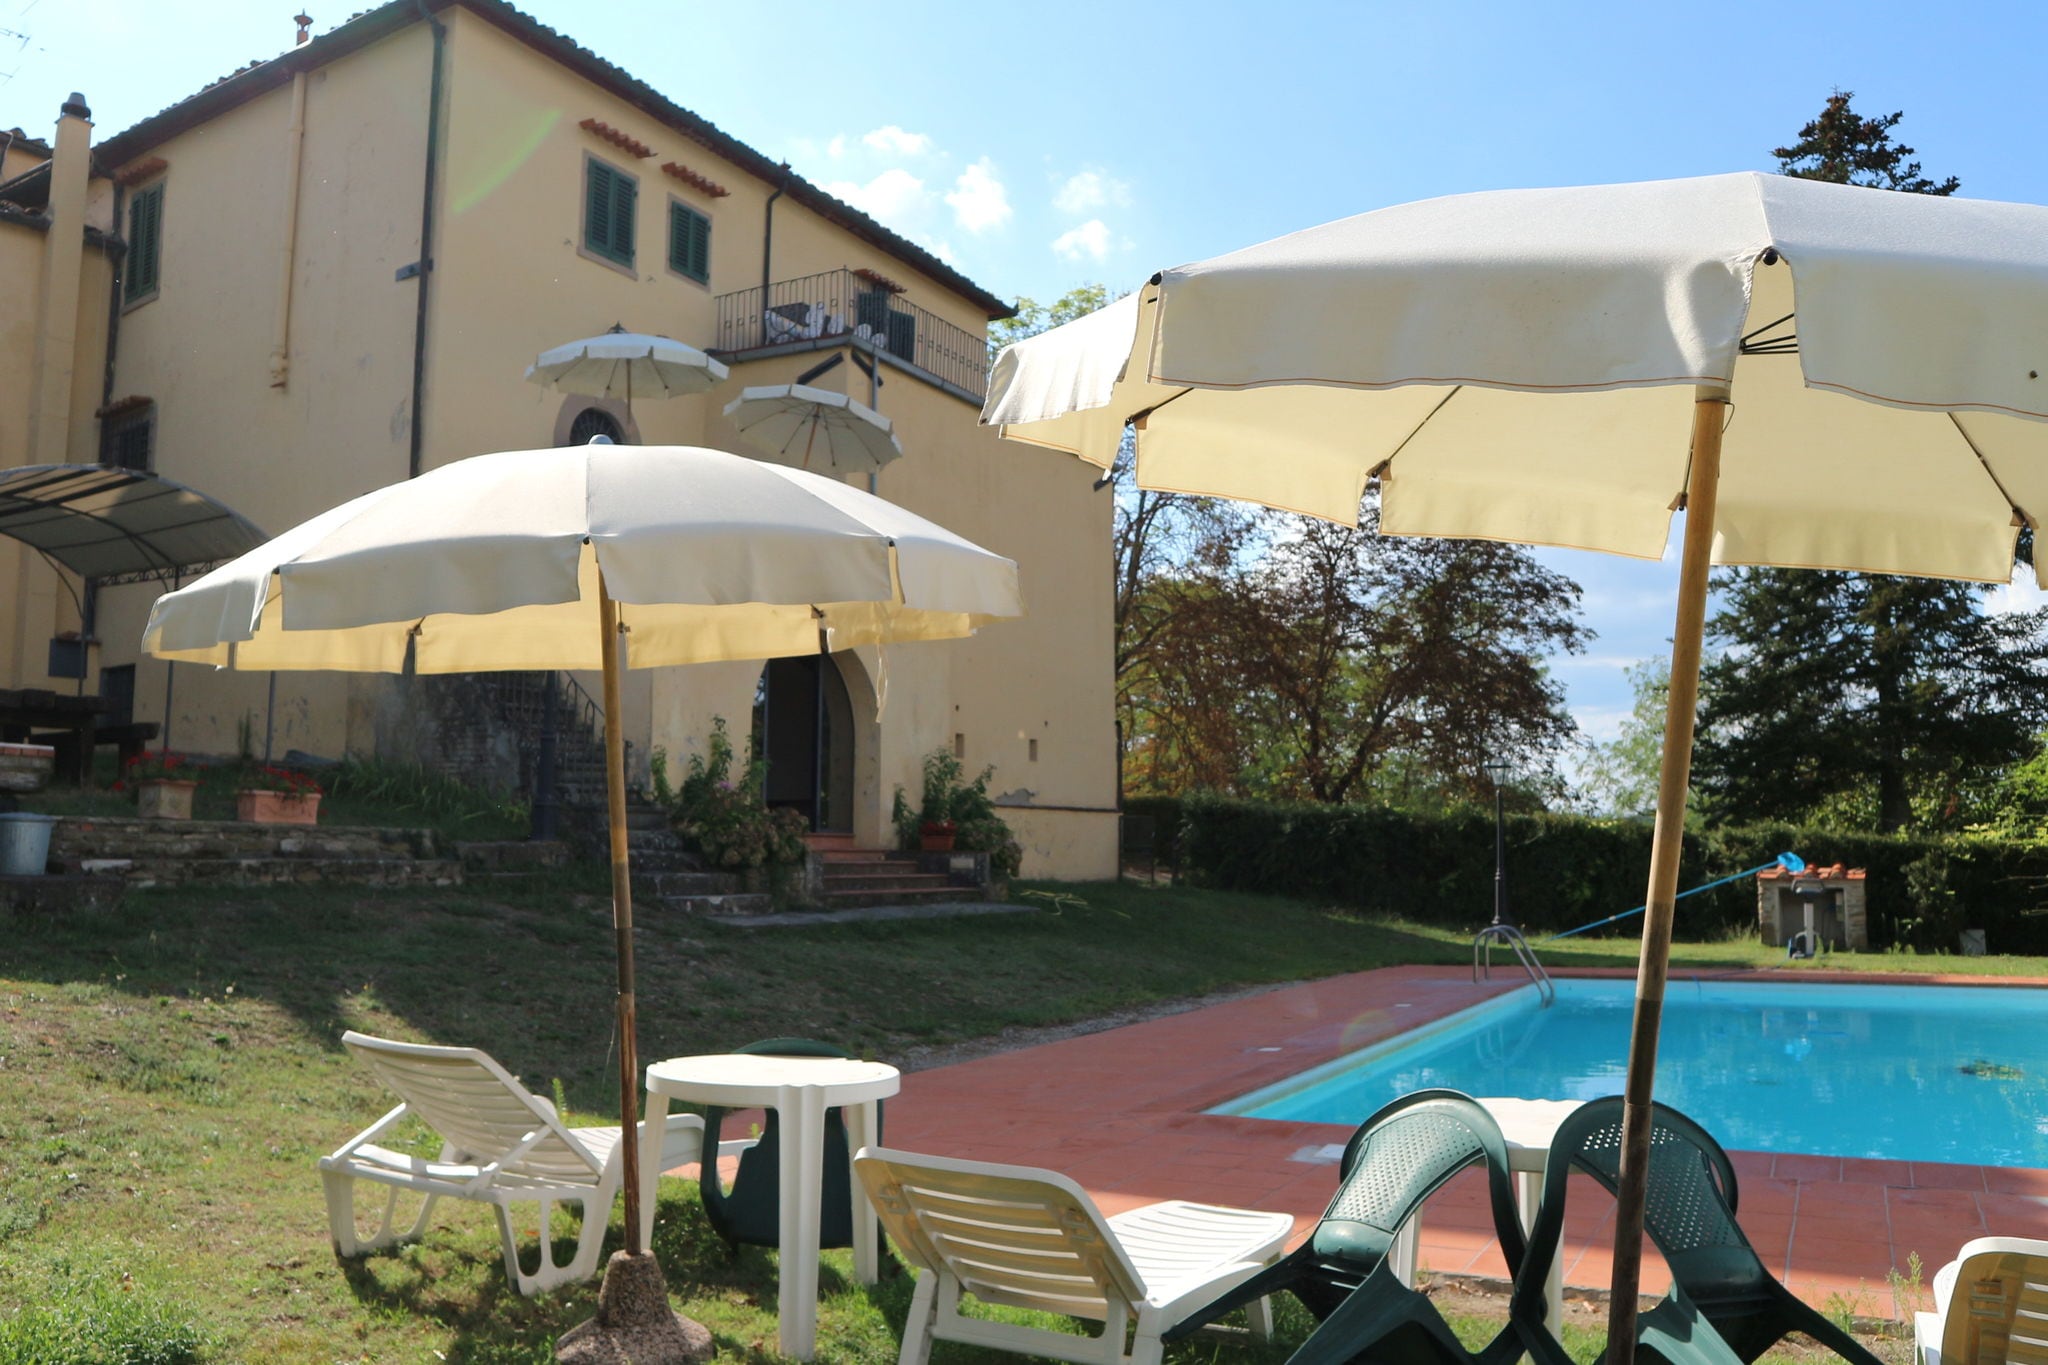 Oude Medici-villa in Toscane met privé zwembad